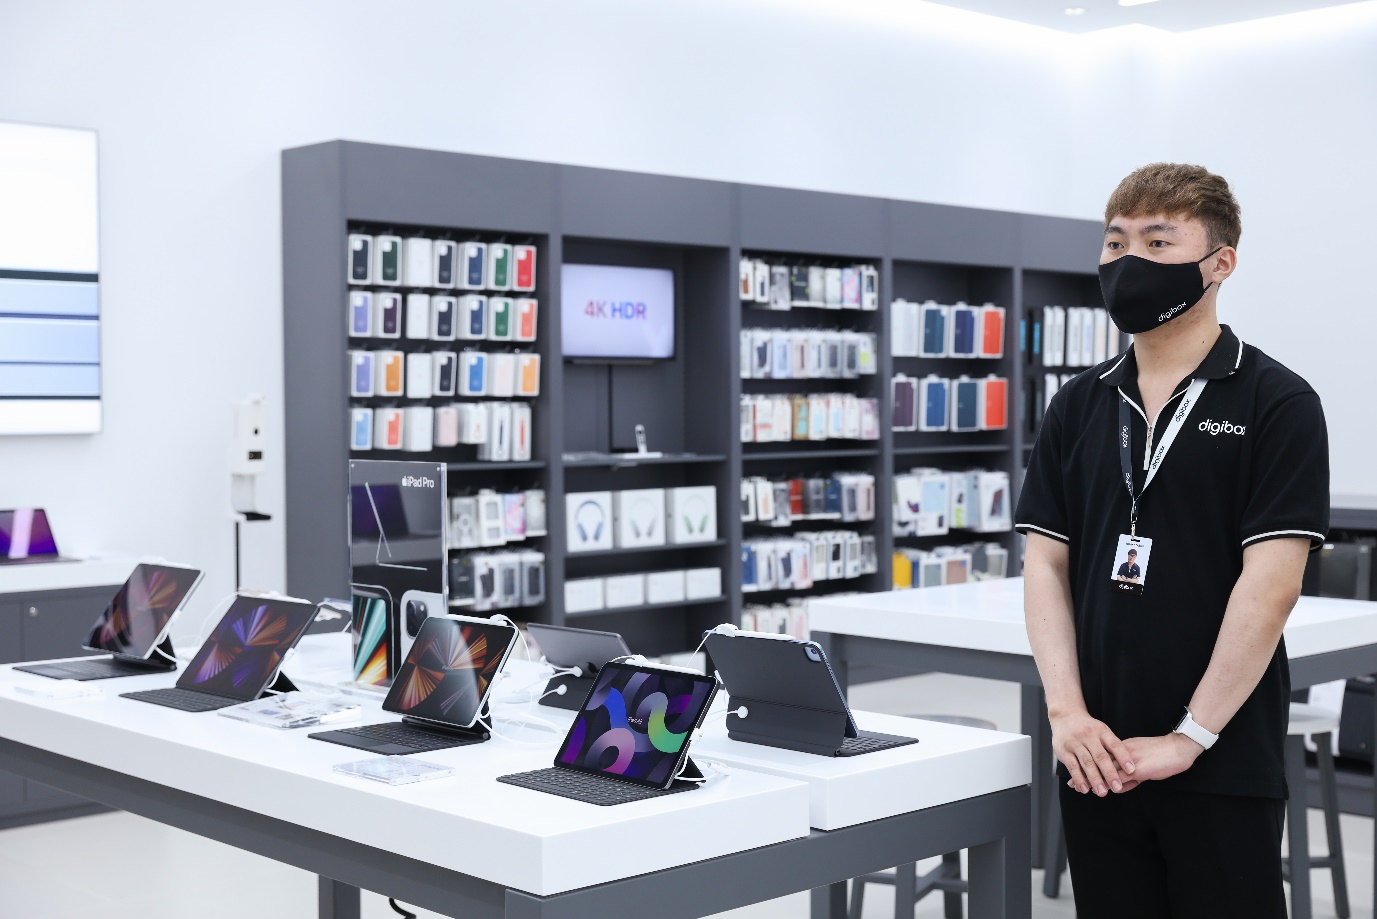 Digibox khai trương cửa hàng Uỷ quyền Apple cùng nhiều ưu đãi - Ảnh 3.